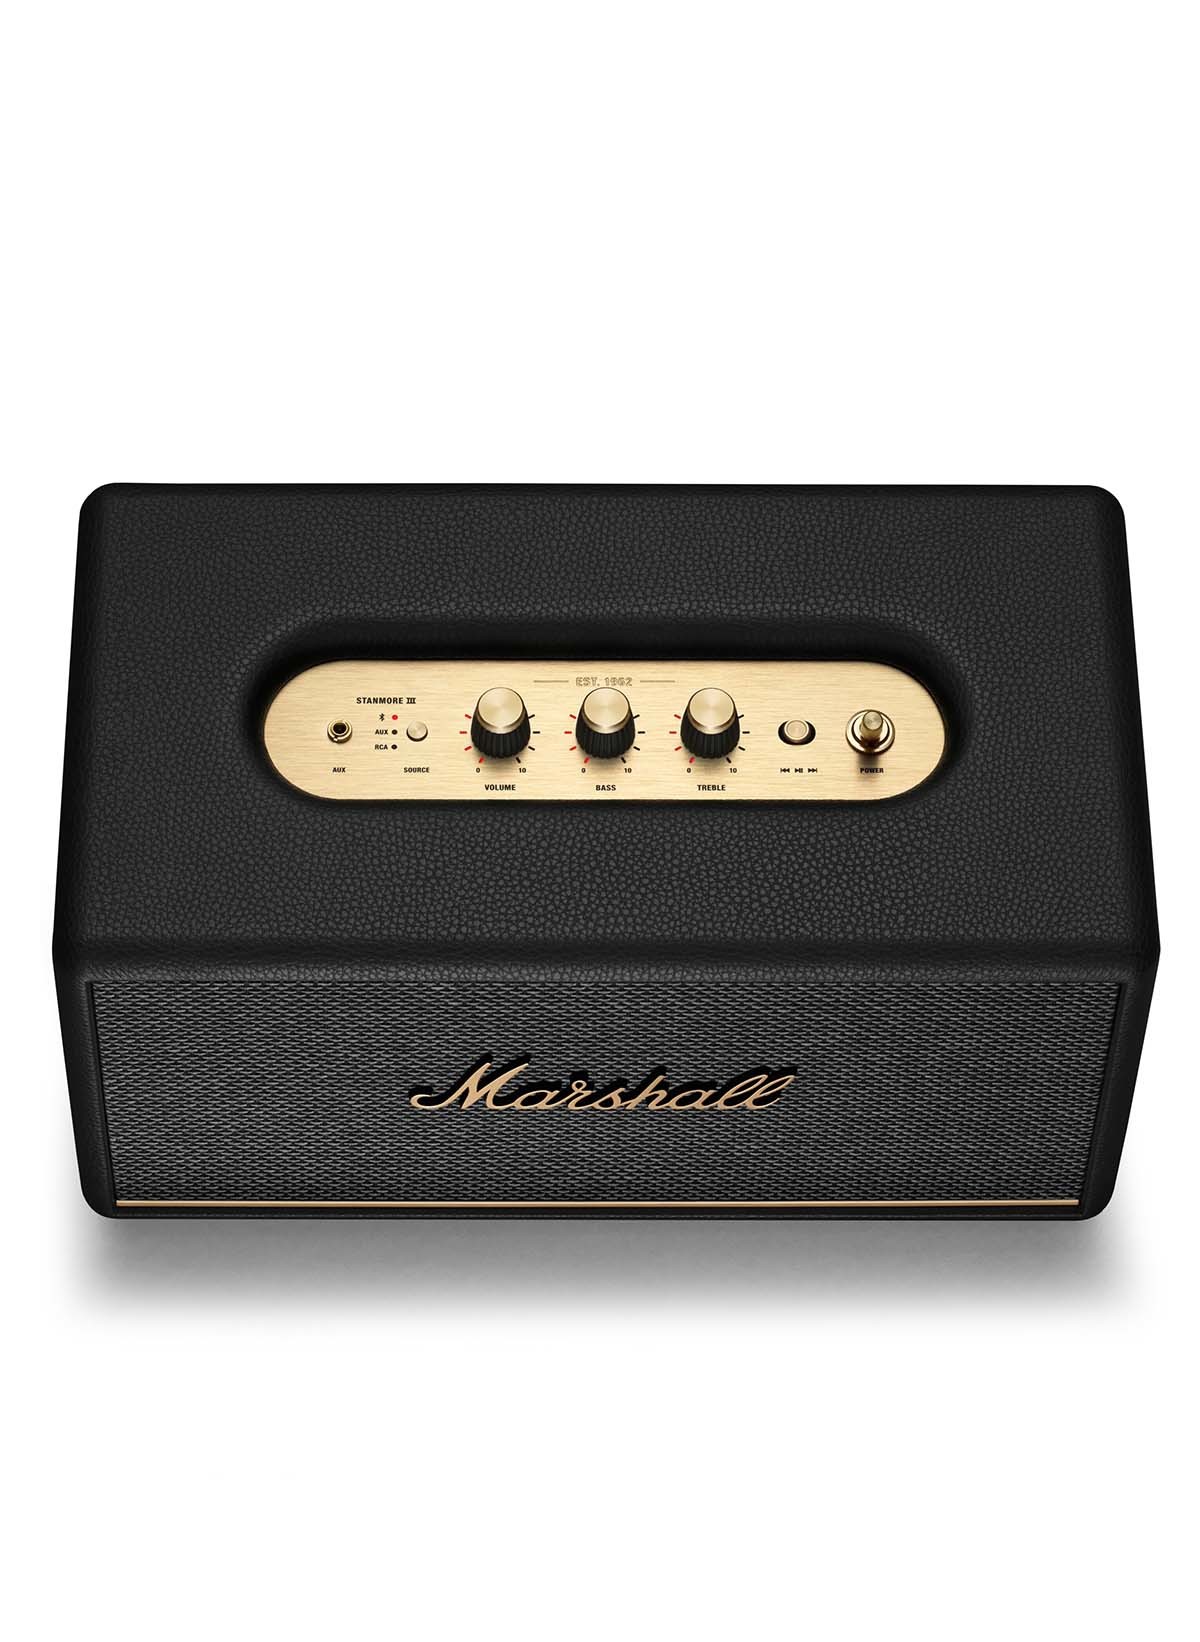 Marshall Stanmore III BT Bluetooth-Lautsprecher, schwarz